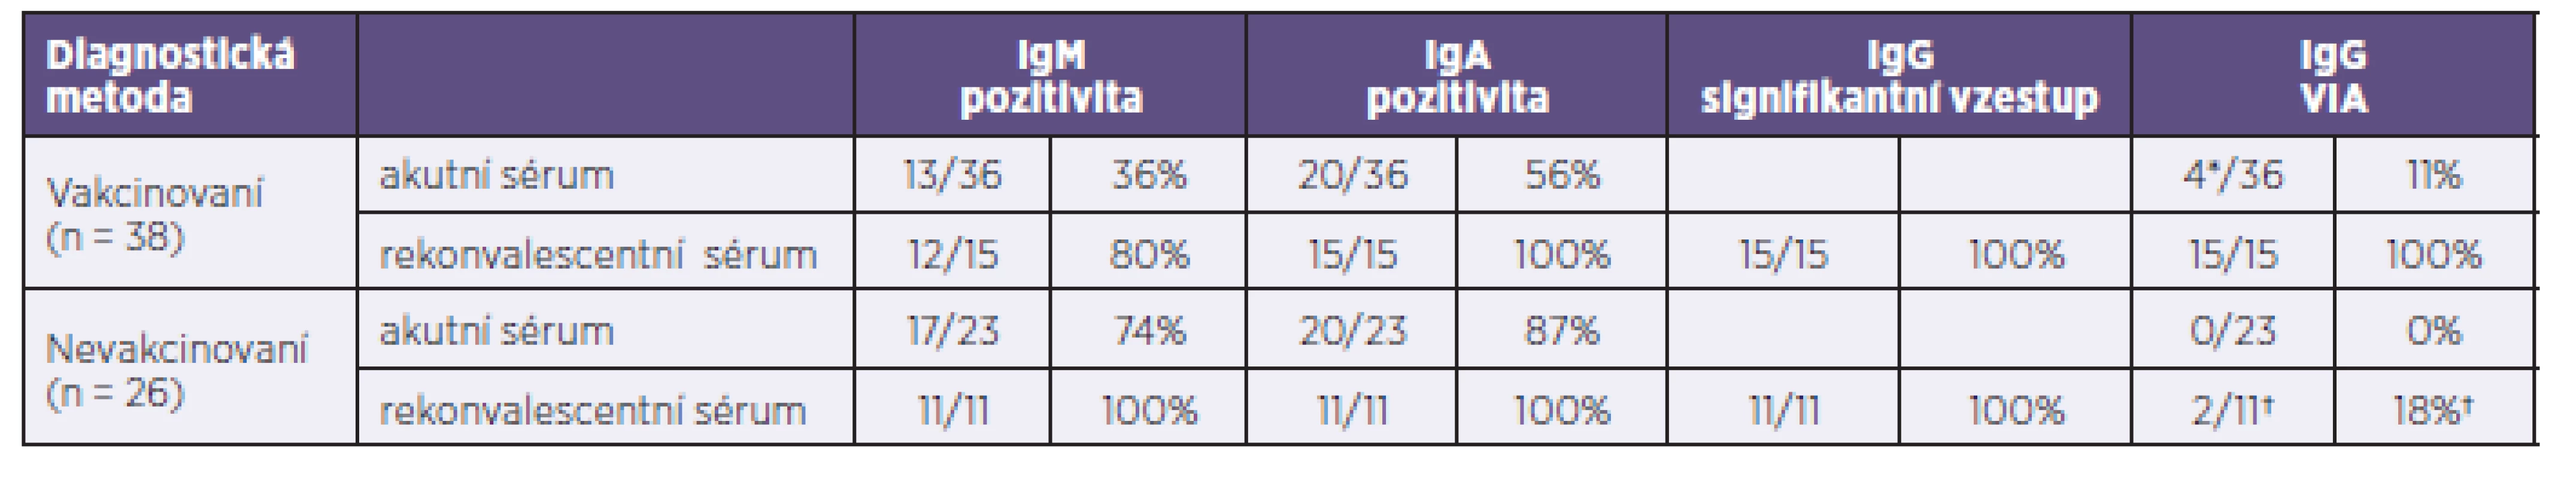 Porovnání výsledků IgM, IgA, IgG a avidity IgG protilátek v akutních a rekonvalescentních sérech nemocných vakcinovaných (soubor 1) a nevakcinovaných (soubor 2)
Table 2. Comparison of the results obtained by the detection of IgM, IgA, and IgG antibodies and IgG antibody avidity testing in acute and convalescent sera of vaccinated (group 1) and unvaccinated (group 2) patients